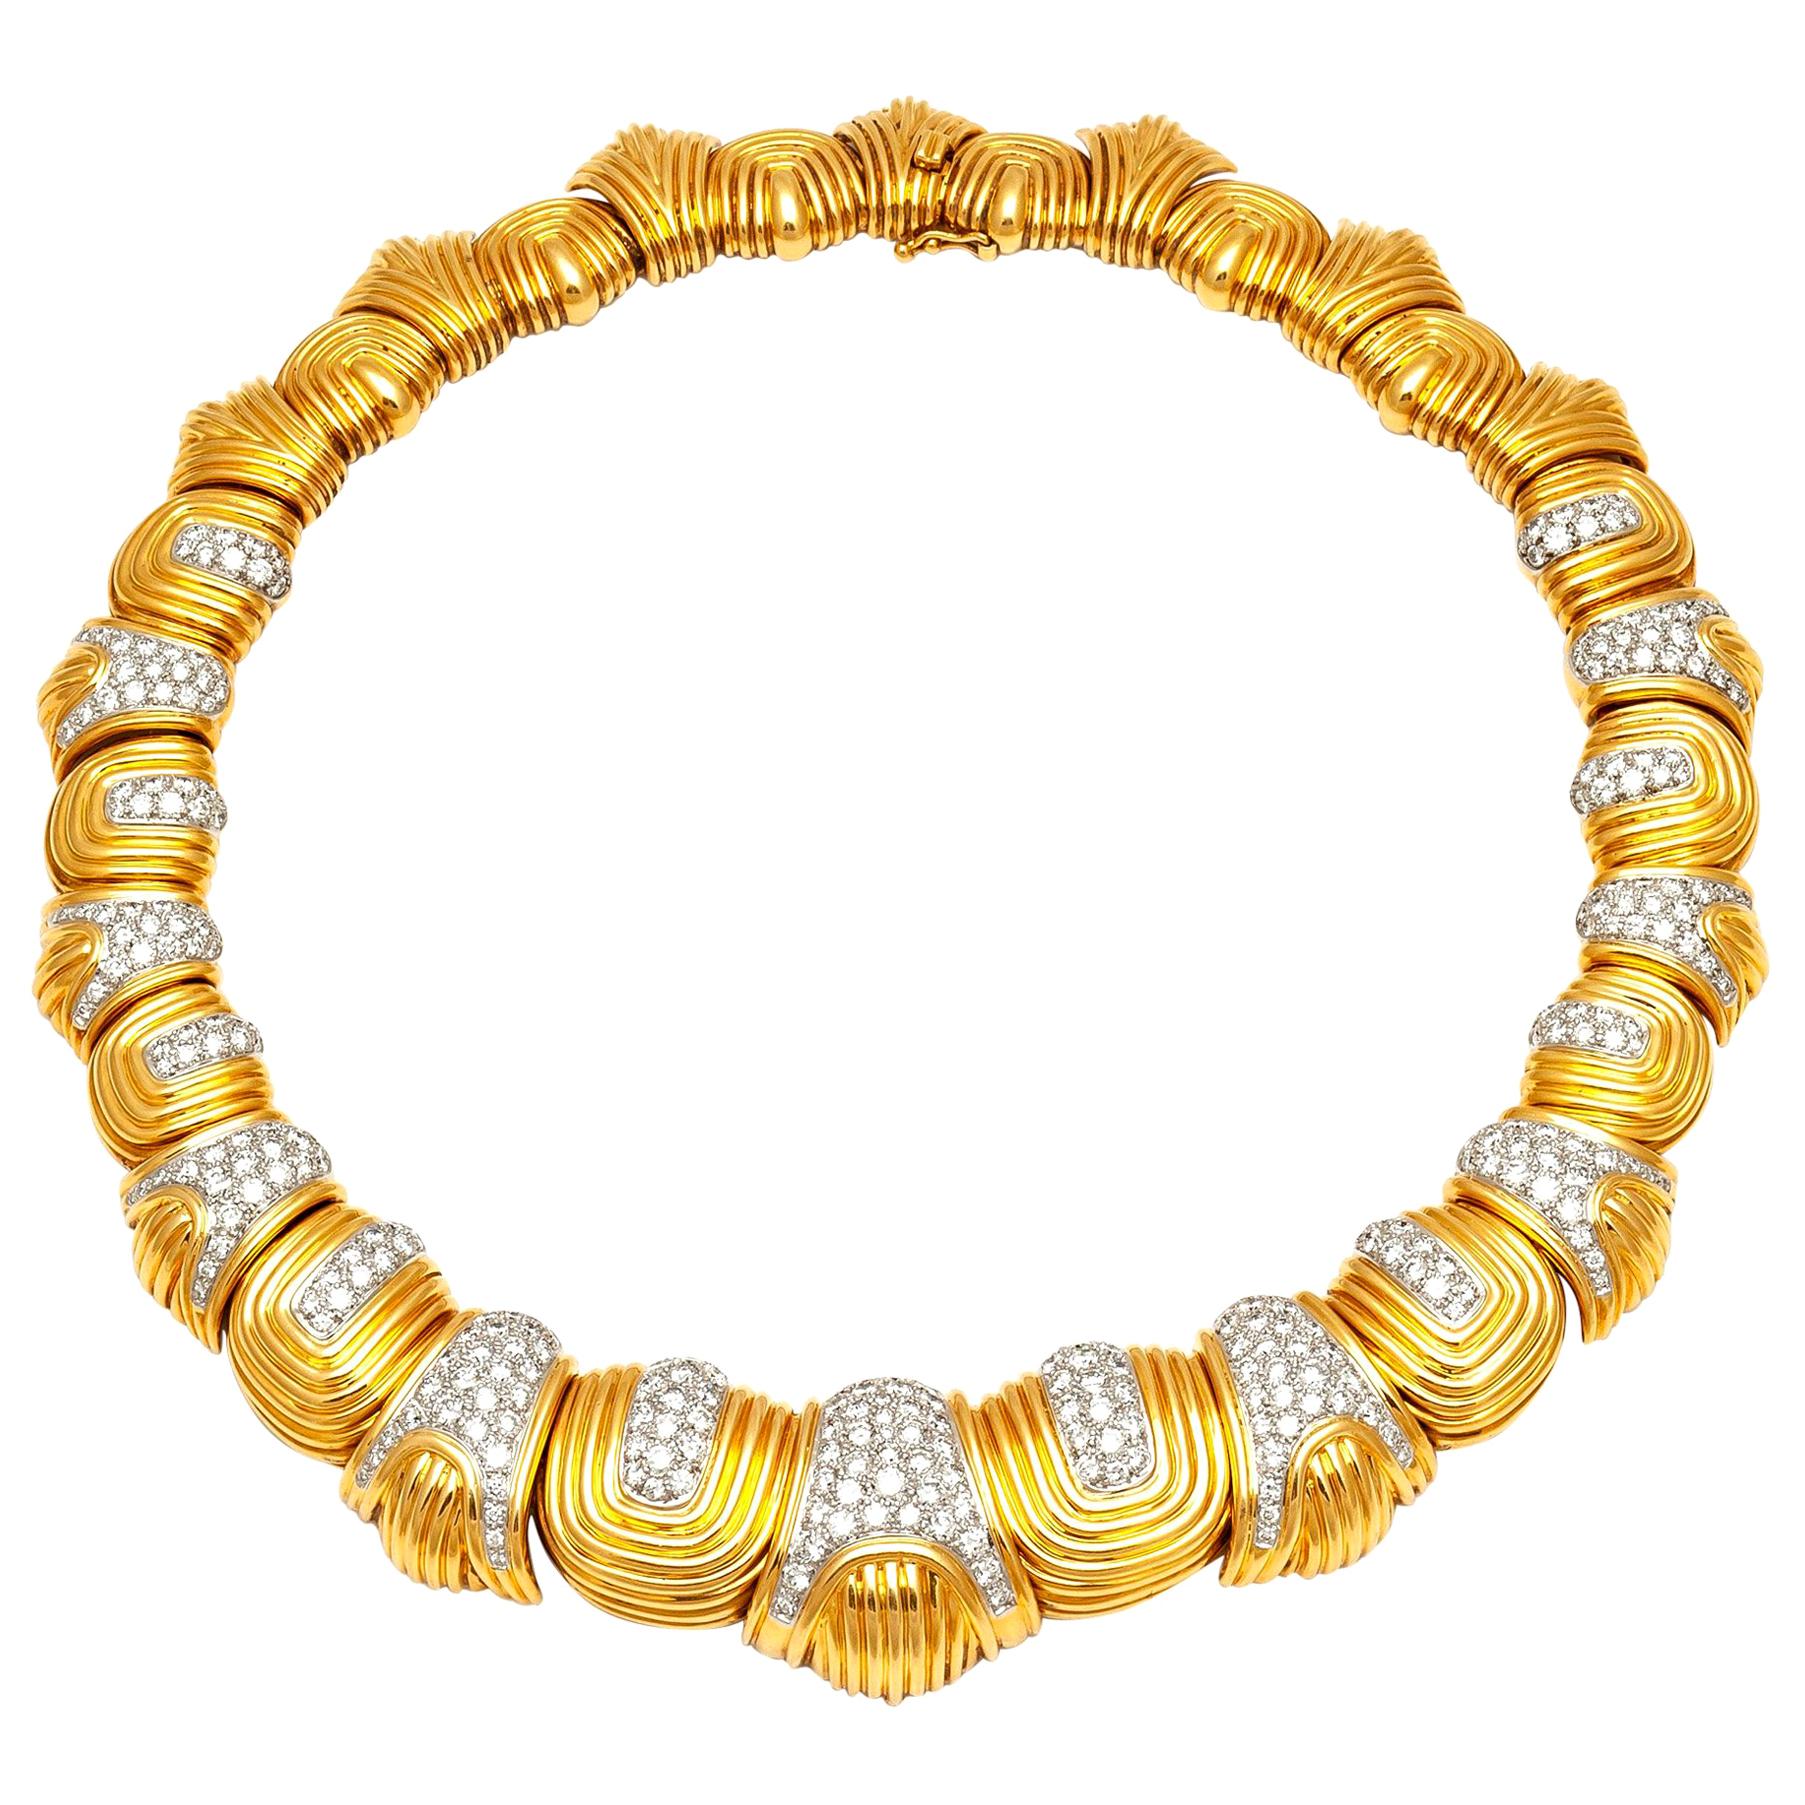 European 18 Karat Gold Chocker Necklace